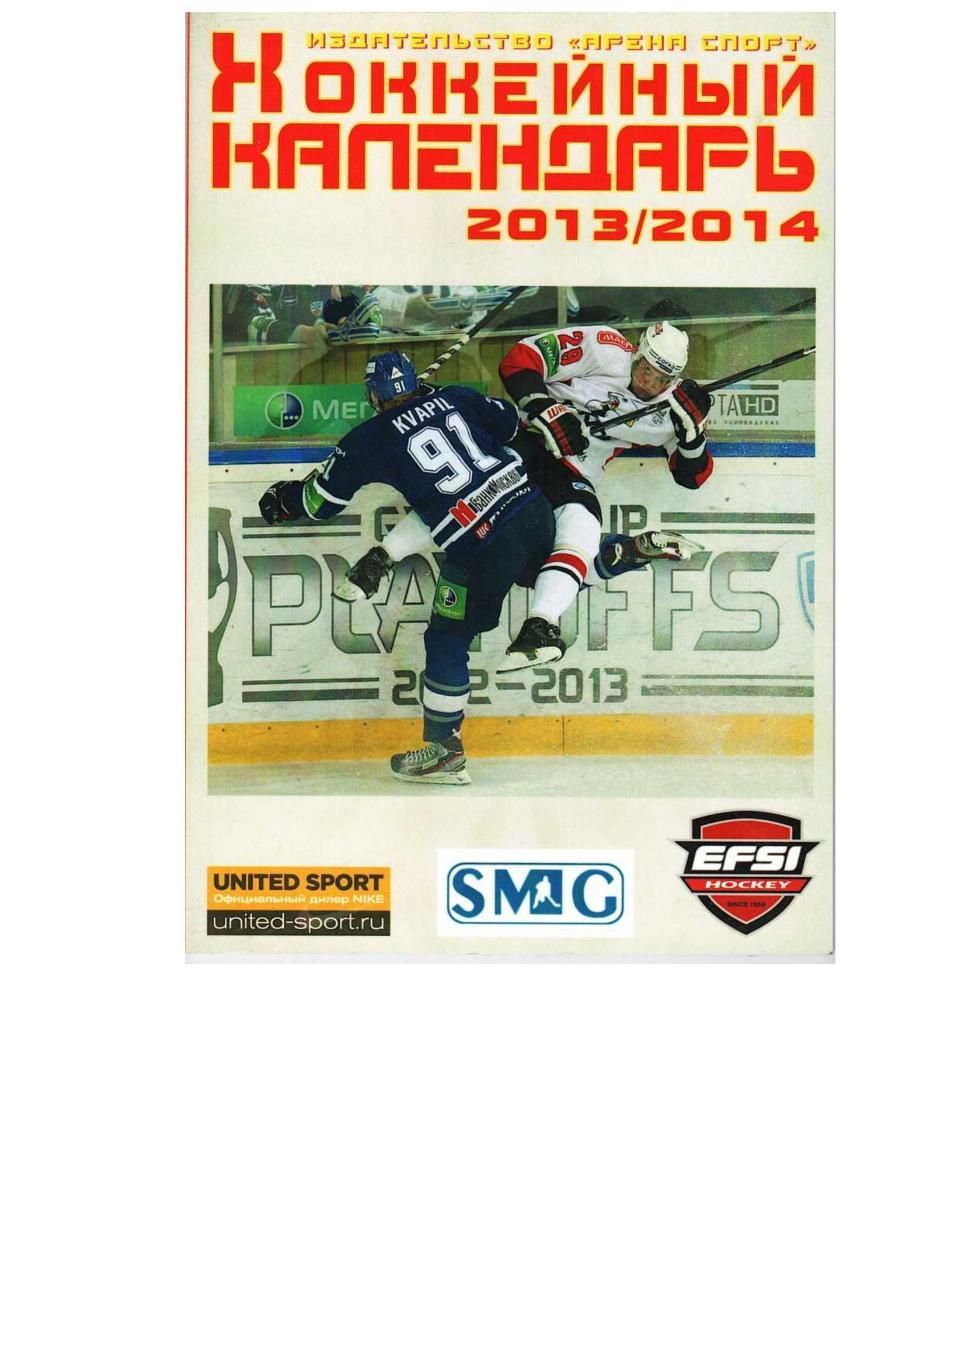 Хоккейный календарь 2013/2014. Справочник. Москва, 2013.